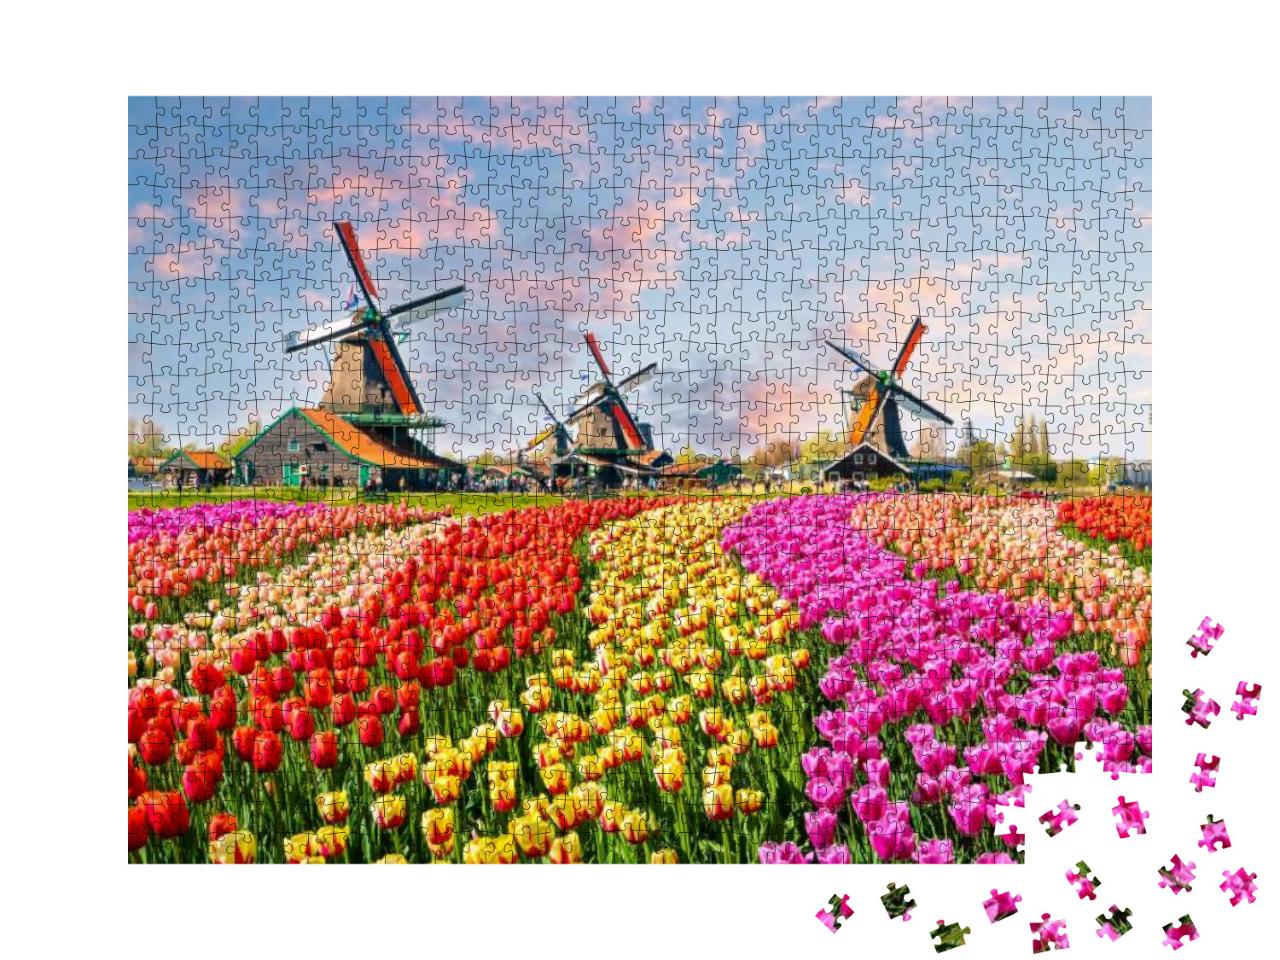 Puzzle 1000 Teile „Idyllische Windmühlen und Tulplen, Niederlande“